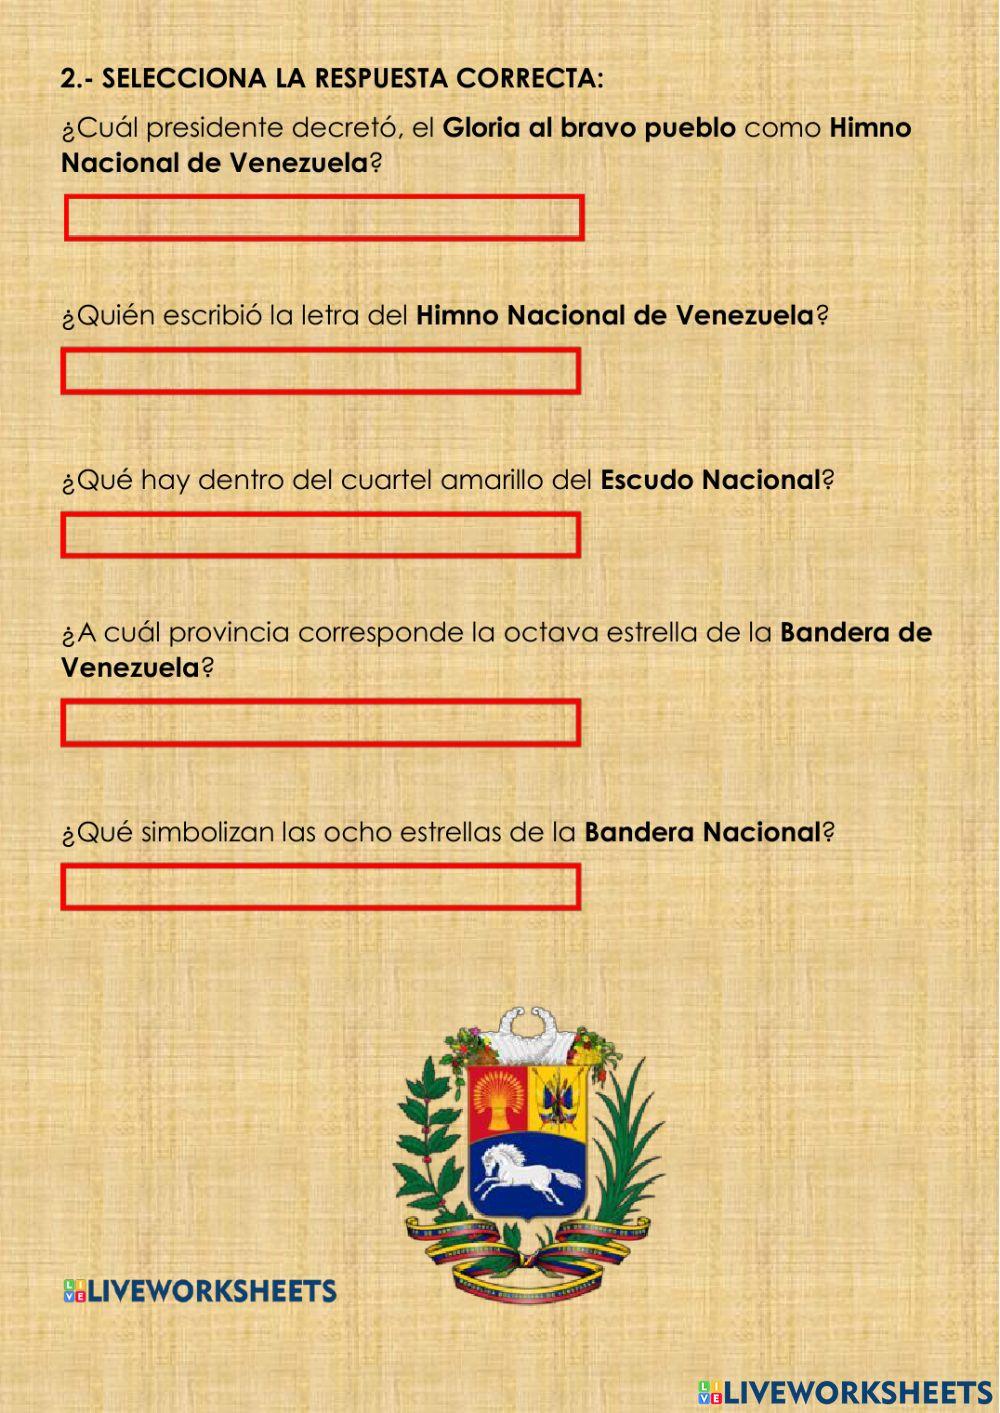 Símbolos patrios de Venezuela